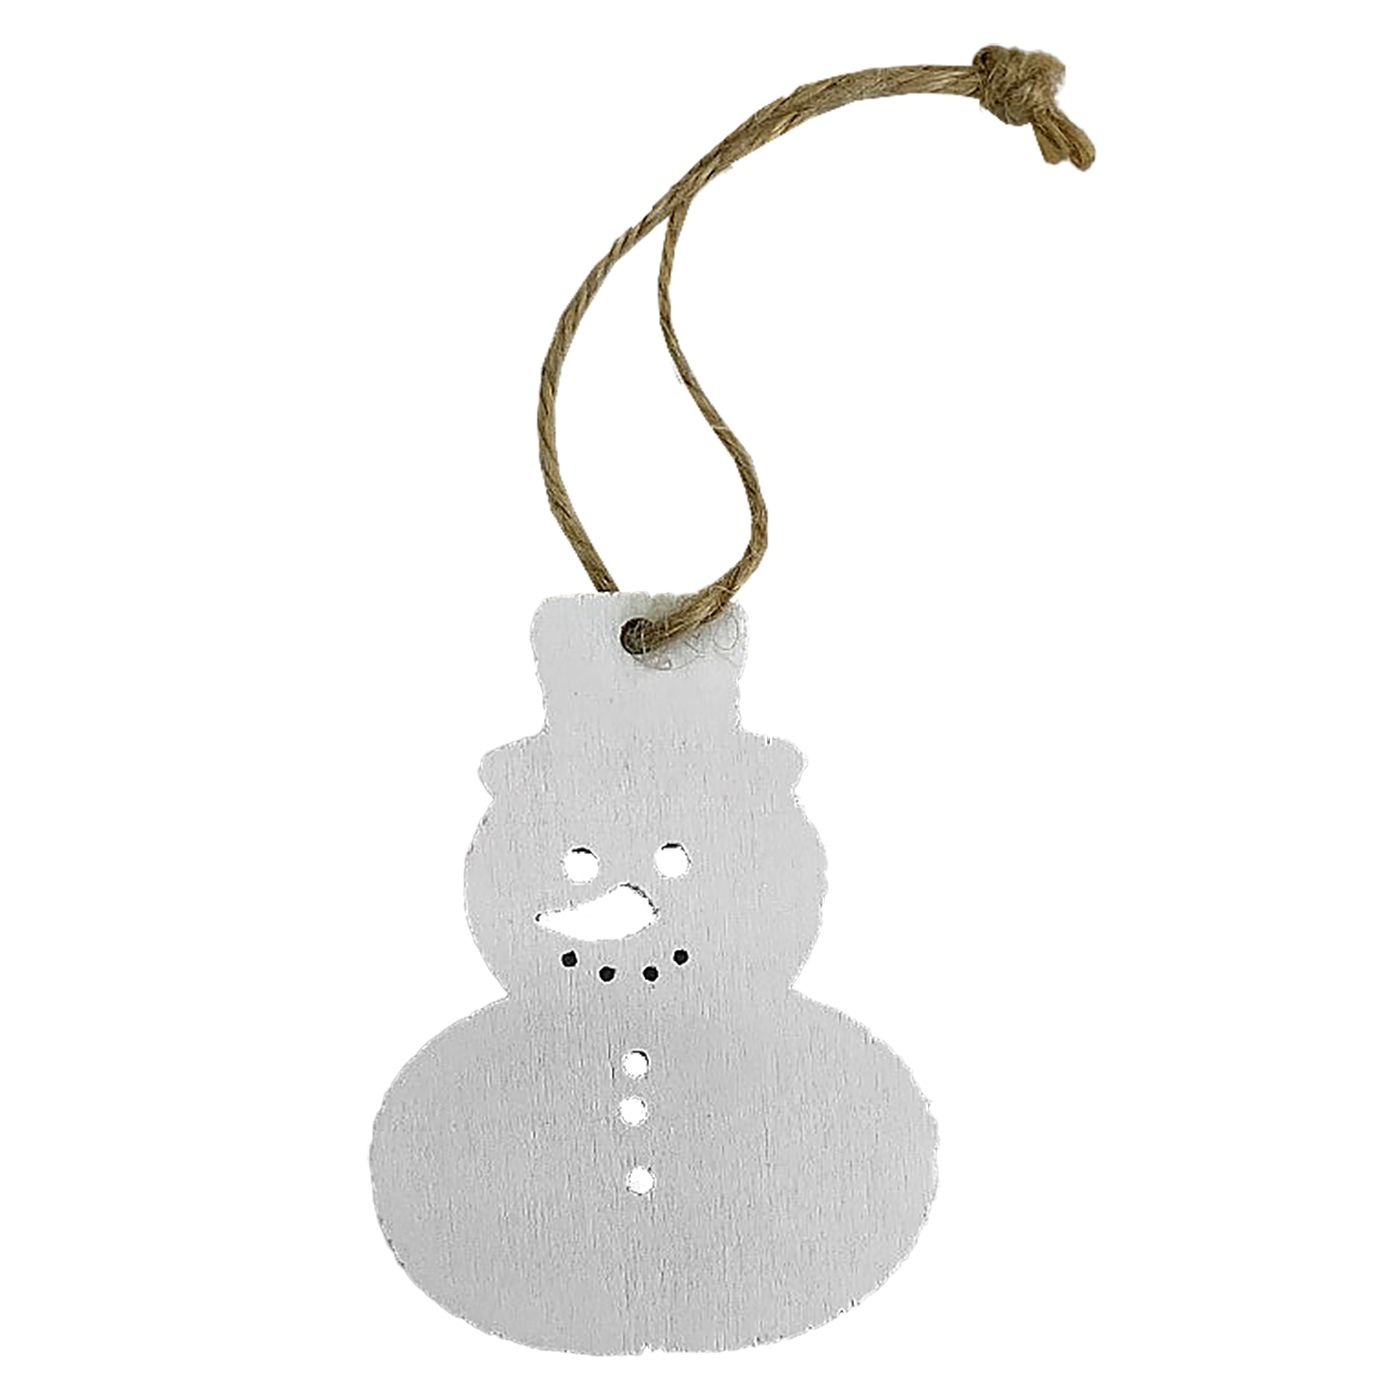 Χριστουγεννιάτικο Στολίδι Χιονάνθρωπος Ξύλινος Λευκός 7εκ. Xmas fest 93-3154 (Σετ 10 Τεμάχια) (Υλικό: Ξύλο, Χρώμα: Λευκό) - Xmas fest - 93-3154 169280